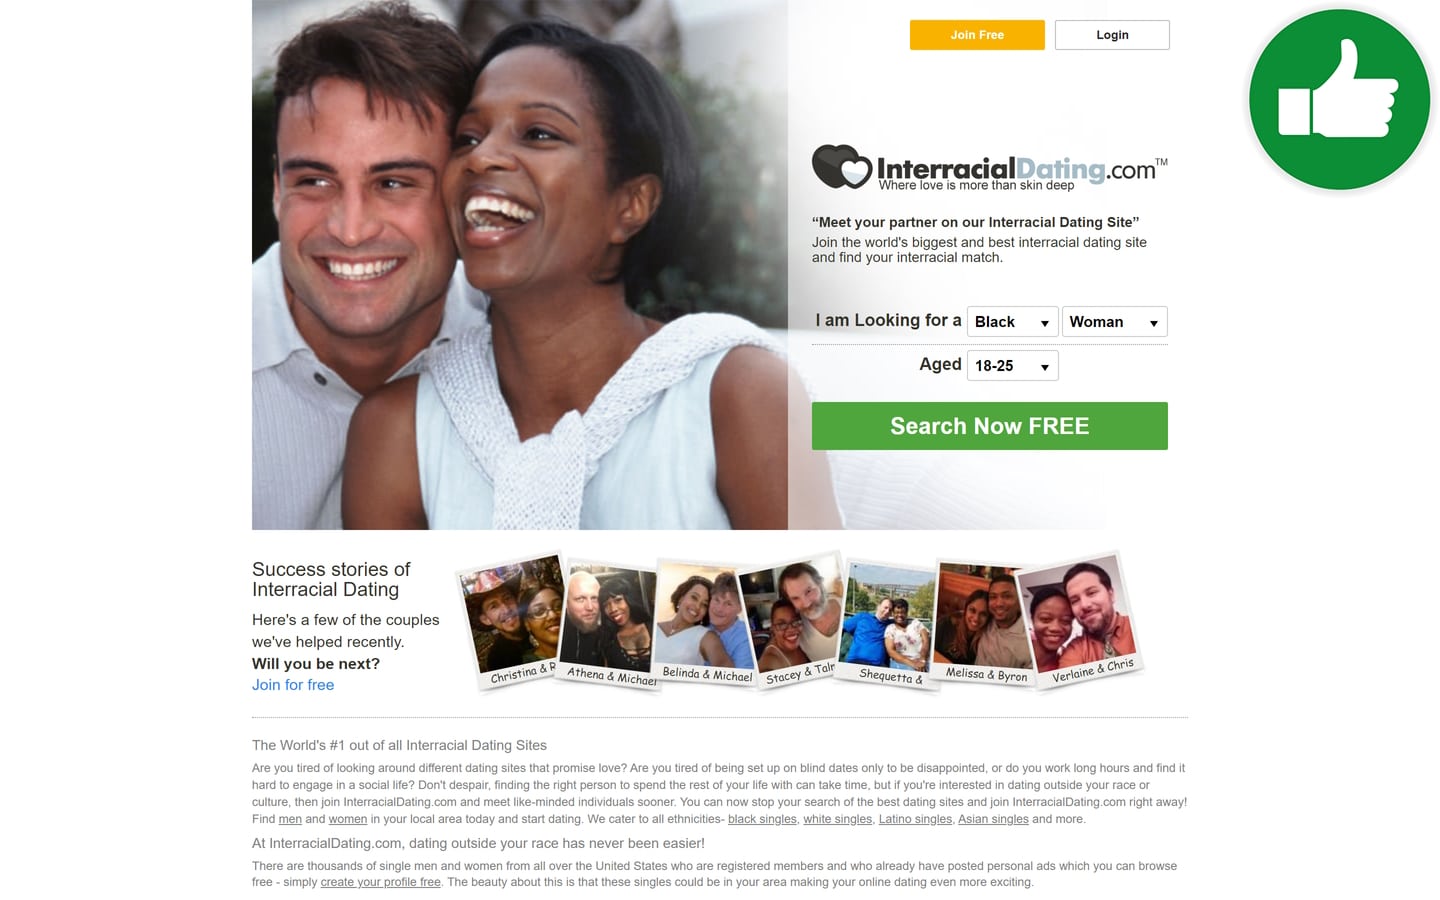 Review InterracialDating.com scam experience